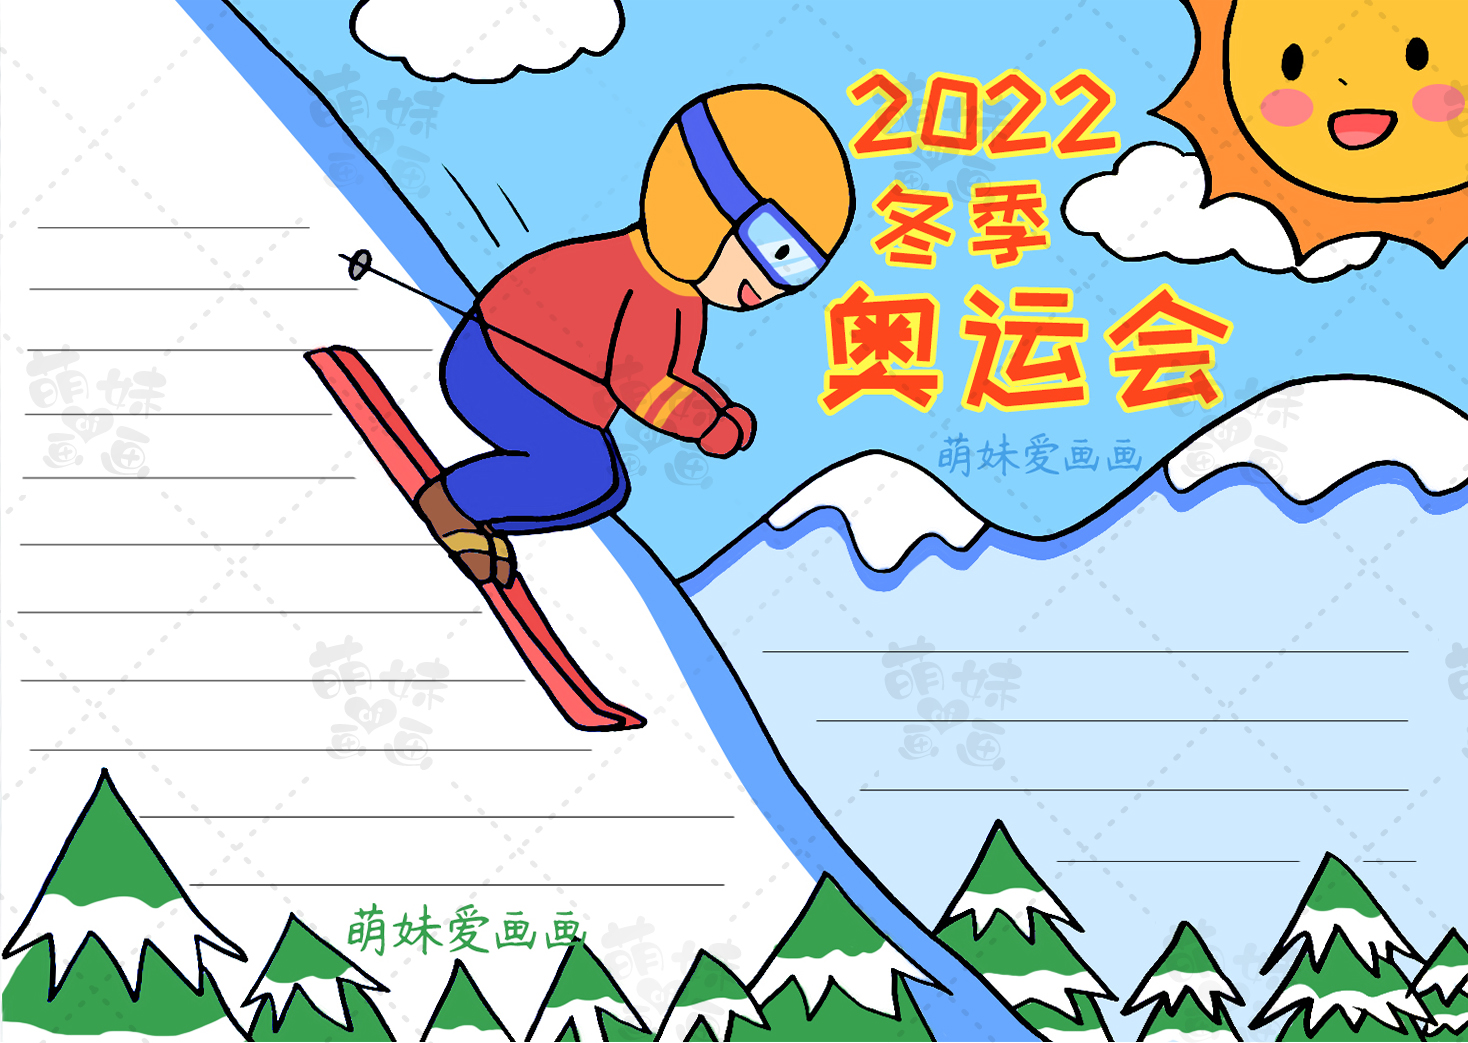 2022年冬奥手抄报模板图片